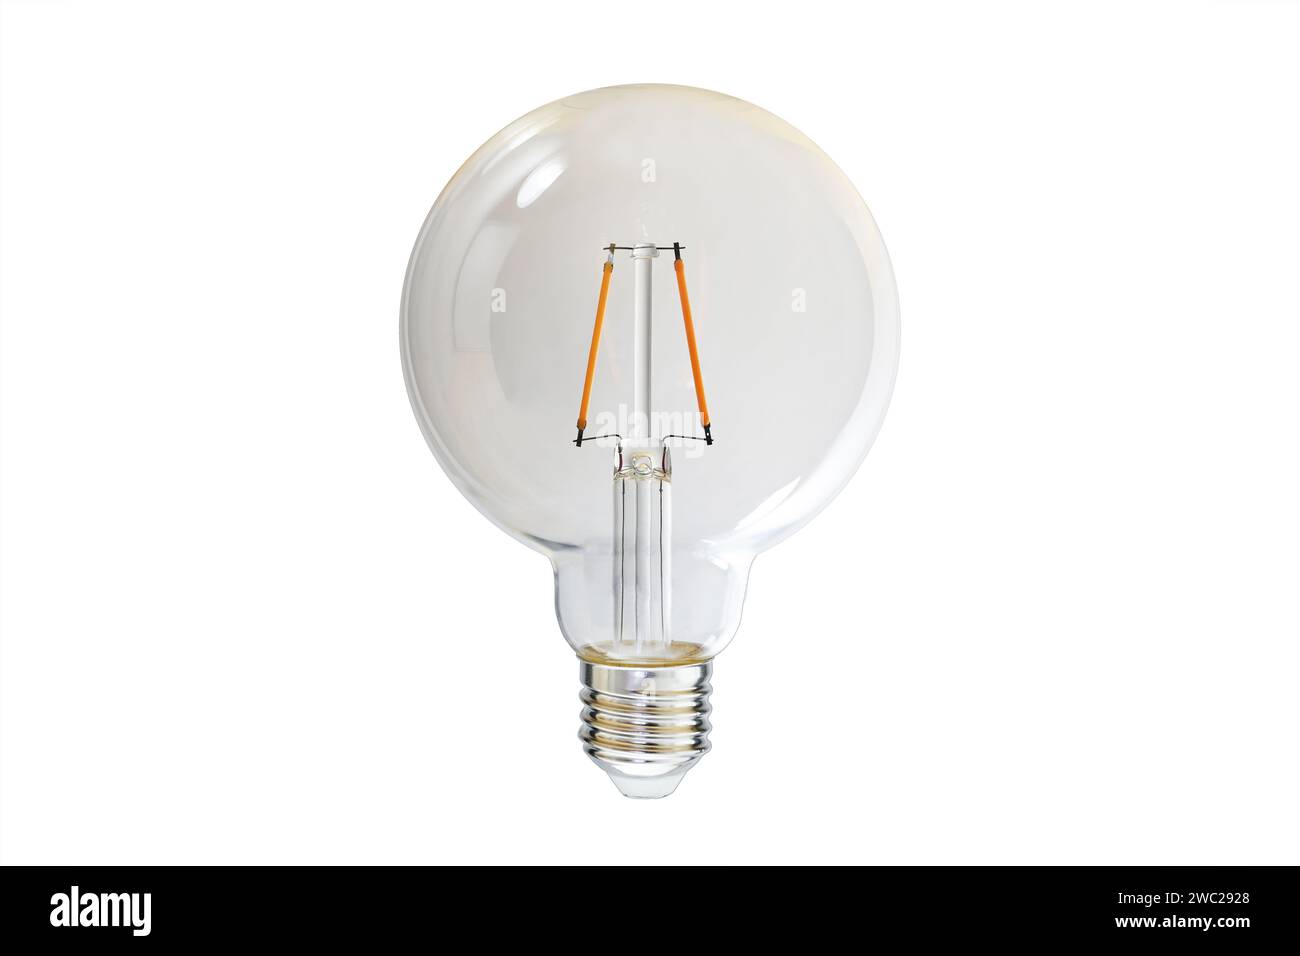 LED-Lampe mit klarem, transparentem Glas und zwei orangefarbenen Glühfäden, nostalgisches Design, das einer traditionellen Glühlampe ähnelt, isoliert auf einem Hauch Stockfoto